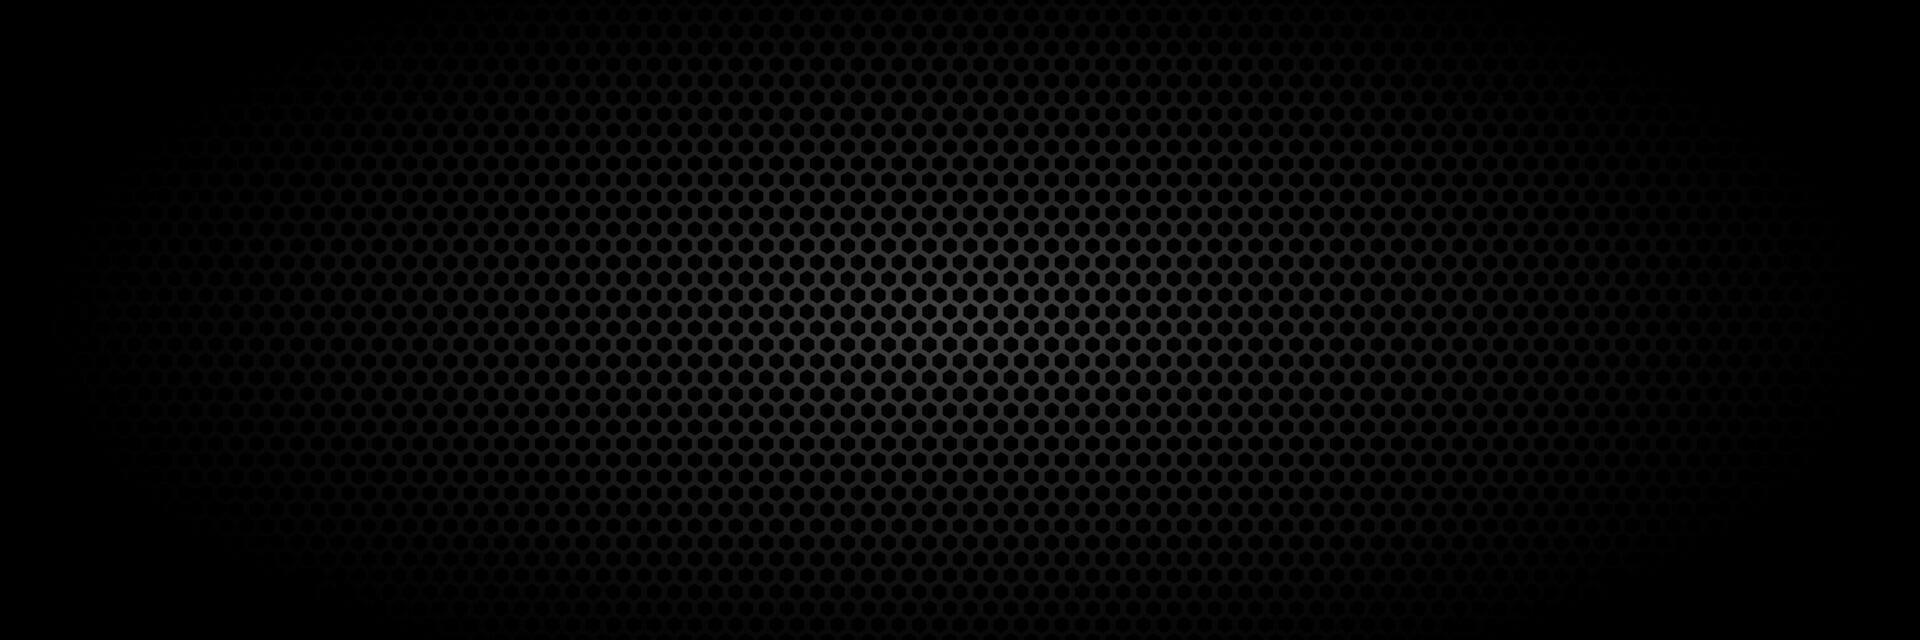 abstract zwart achtergrond met metalen structuur patroon. vector illustratie